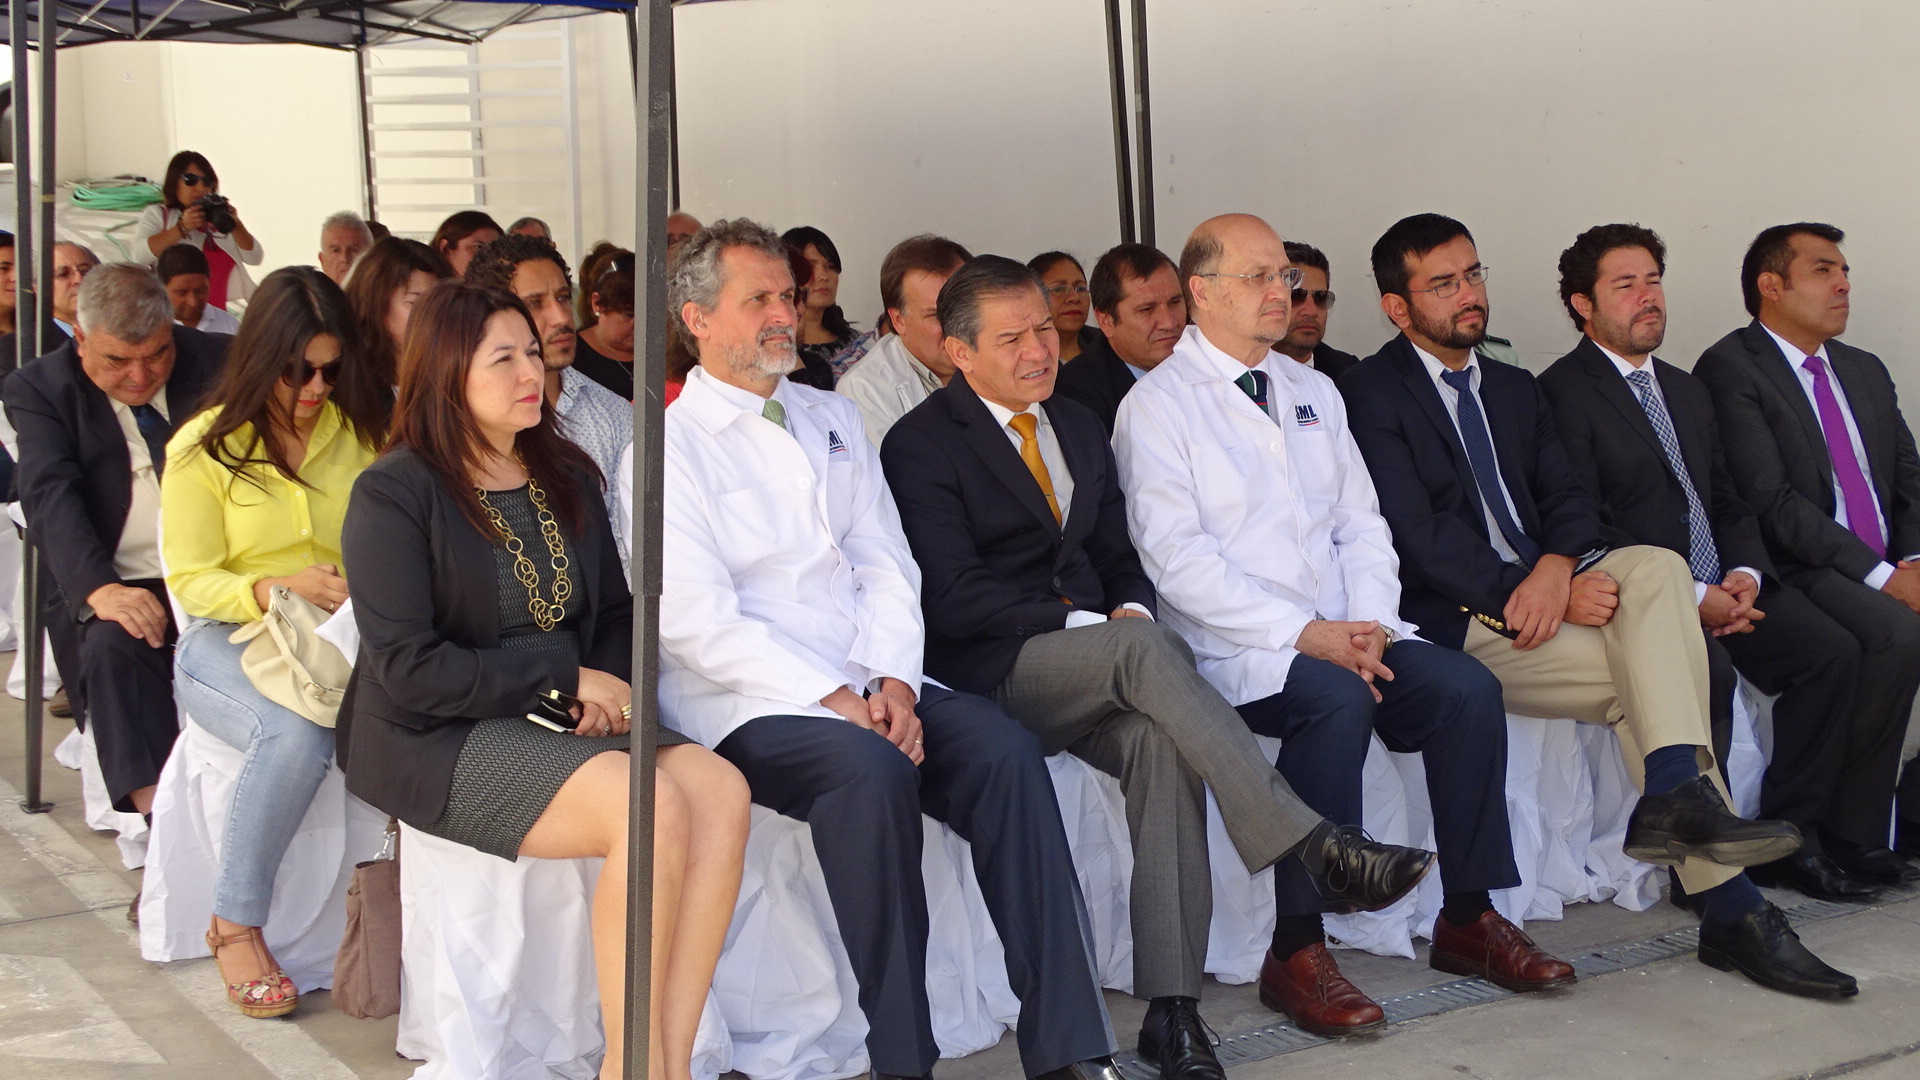 La Defensora Regional junto a las autoridades del Servicio Medico Legal durante la inauguración.